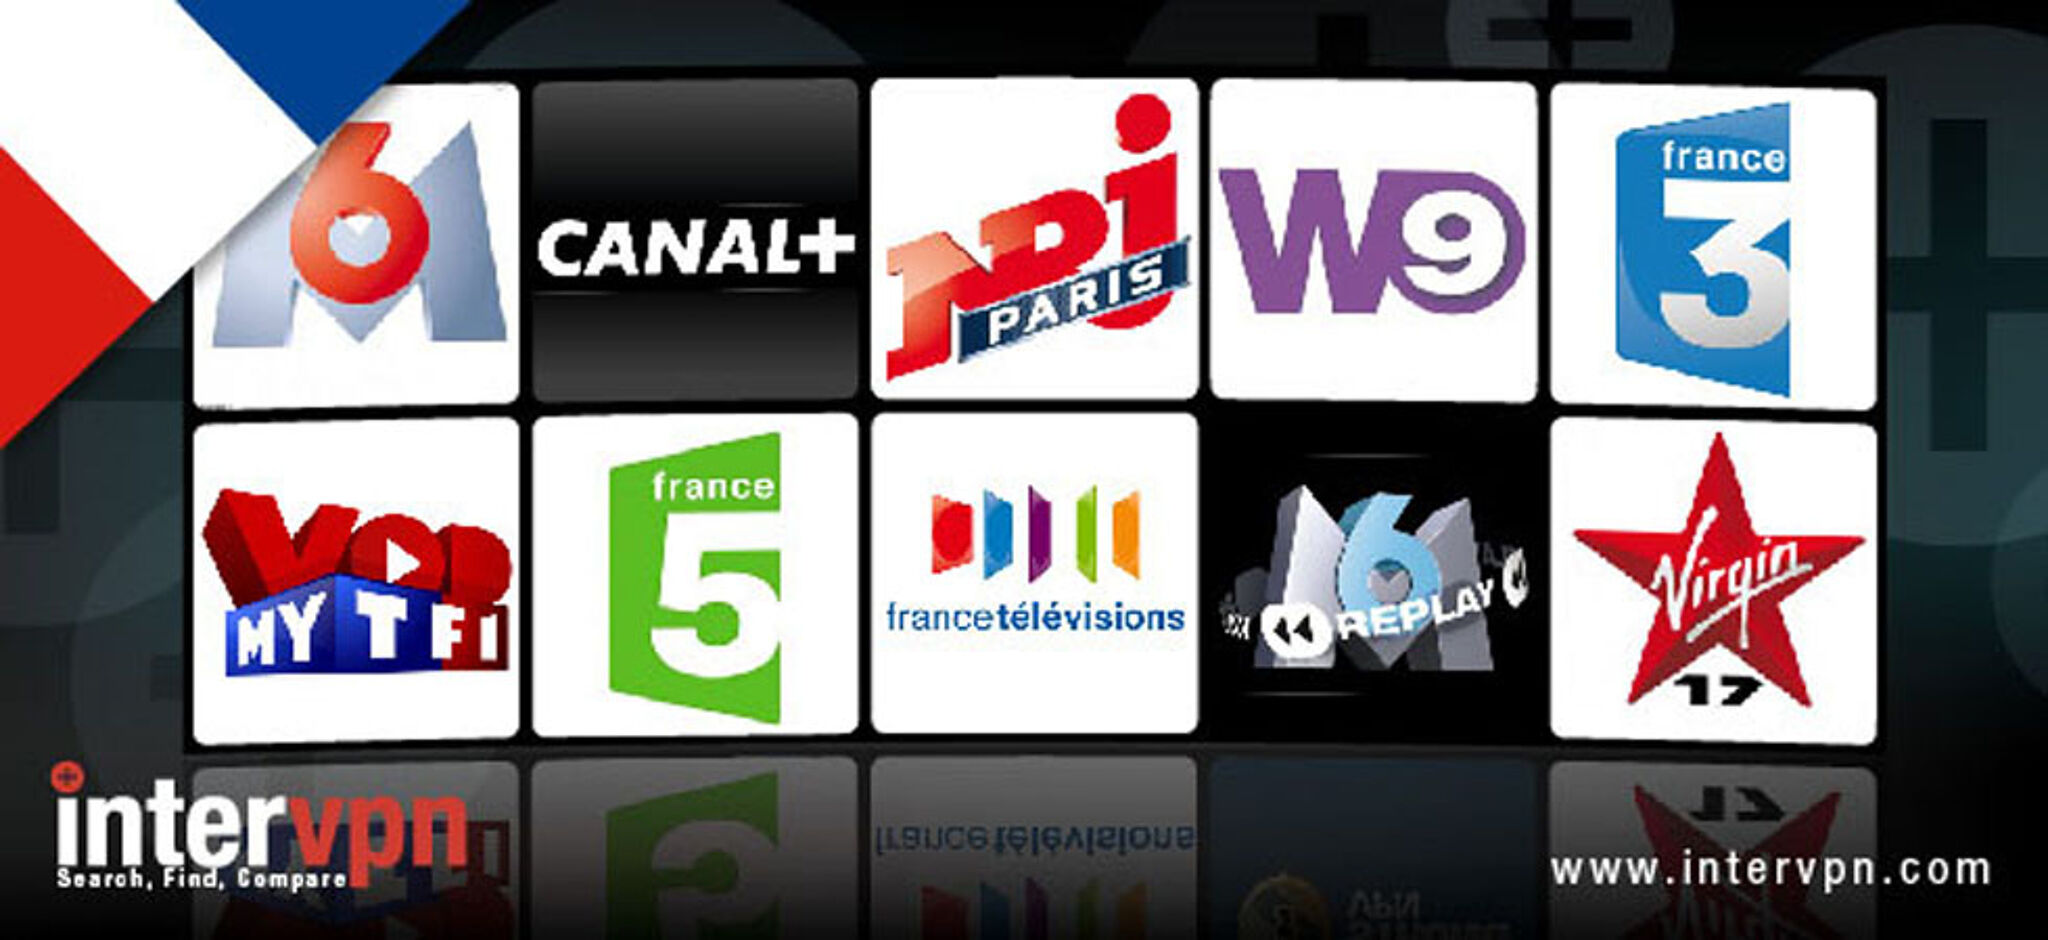 French tv channels. Французское Телевидение. Французские каналы. Канал ТВ французское каналы. Каналы телевидения во Франции.